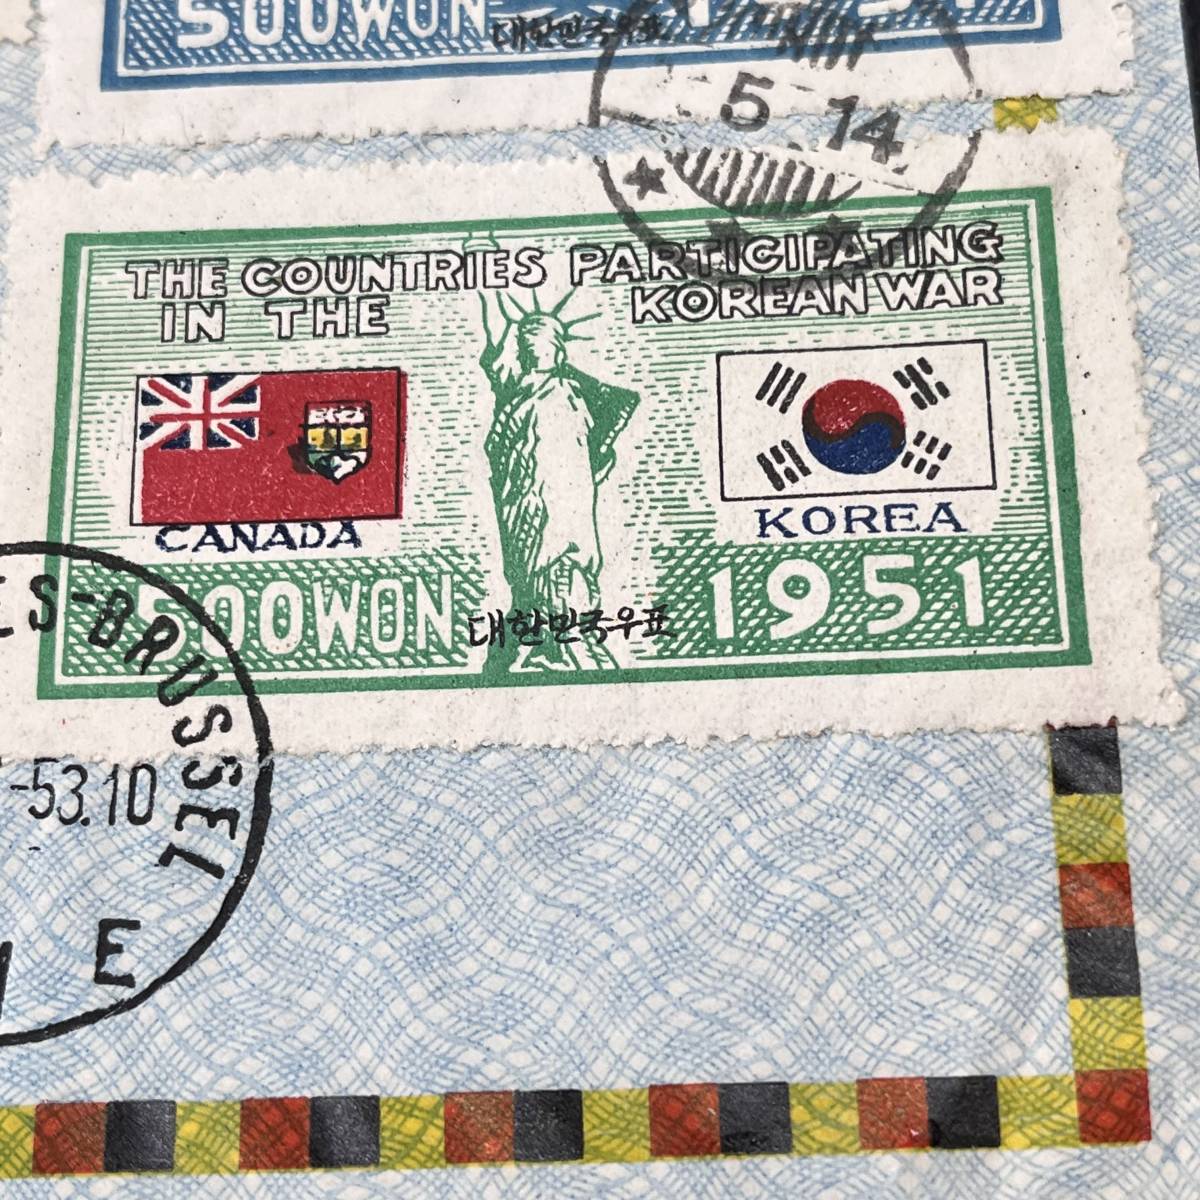 1953年 韓国カバー 朝鮮戦争国連軍 カナダ切手2種他貼 ベルギー軍贈呈用封筒使用 ブリュッセル着印 エンタイア_画像4